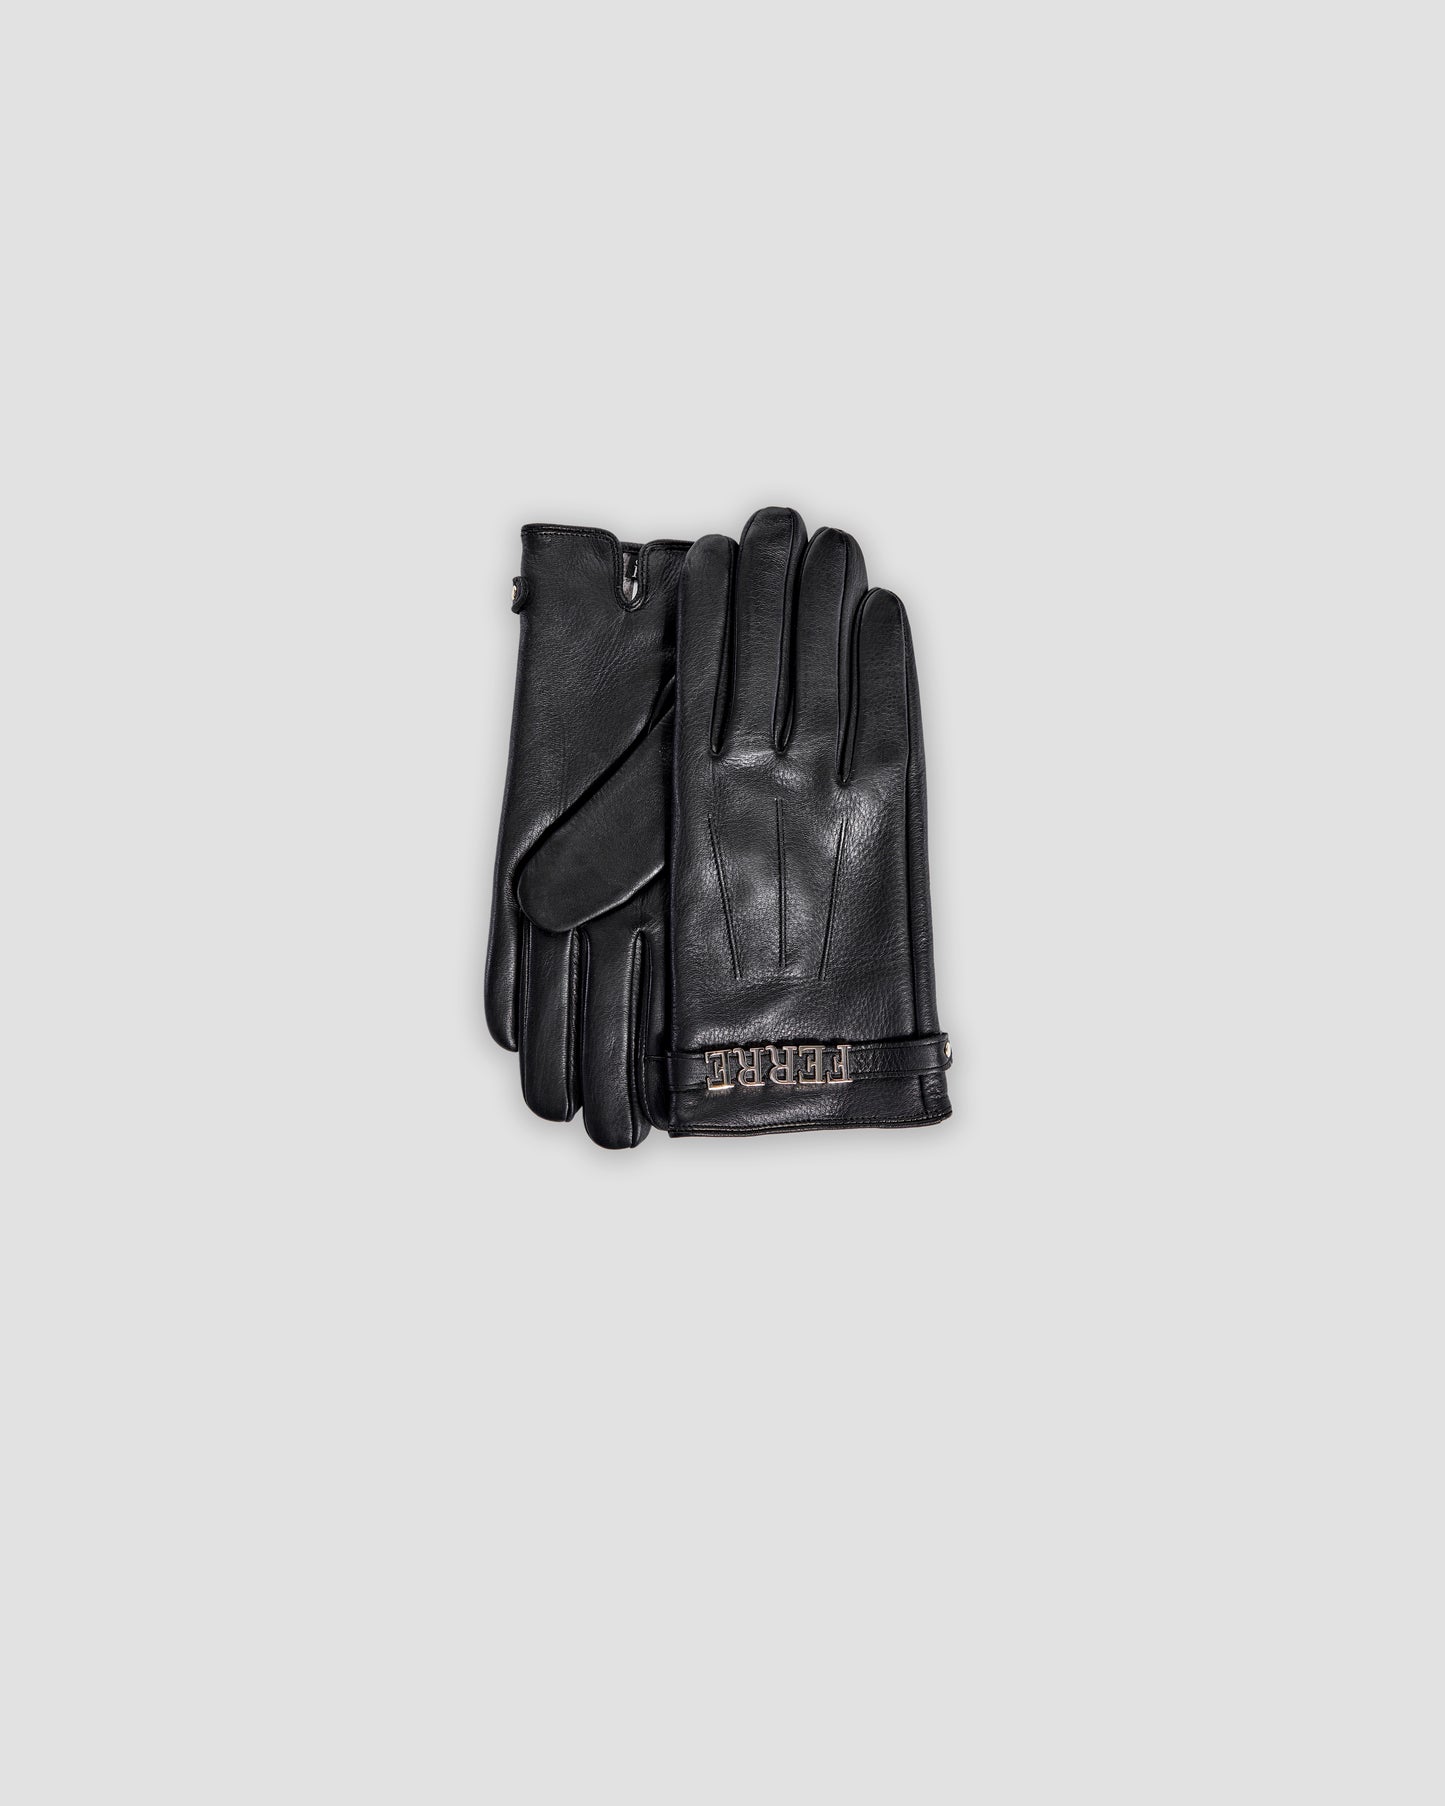 Metal Brand Embellished Gloves